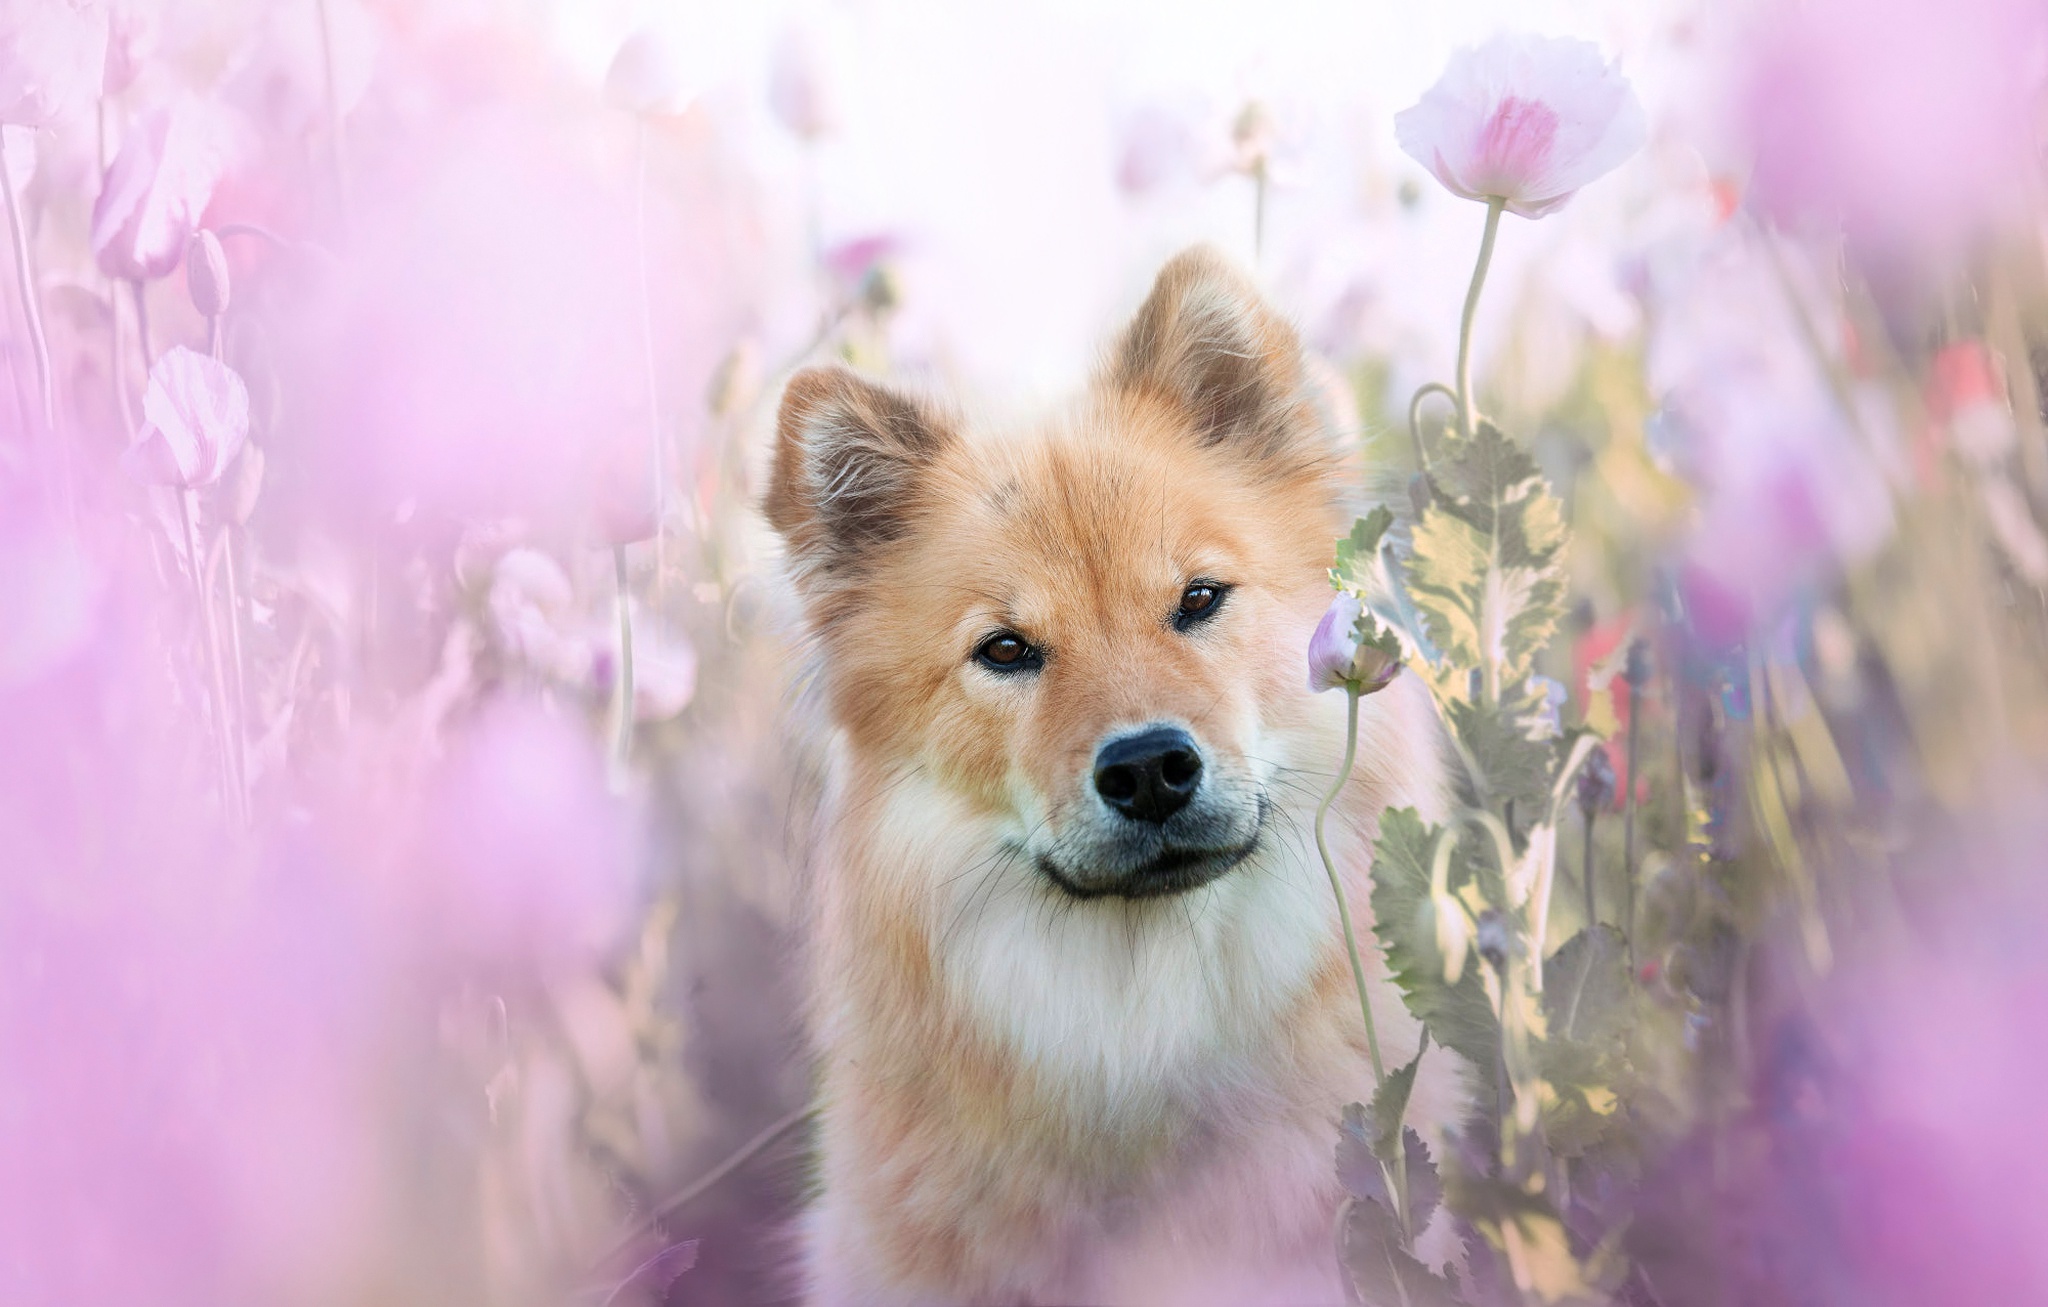 Download mobile wallpaper Dogs, Flower, Dog, Animal, Eurasier for free.